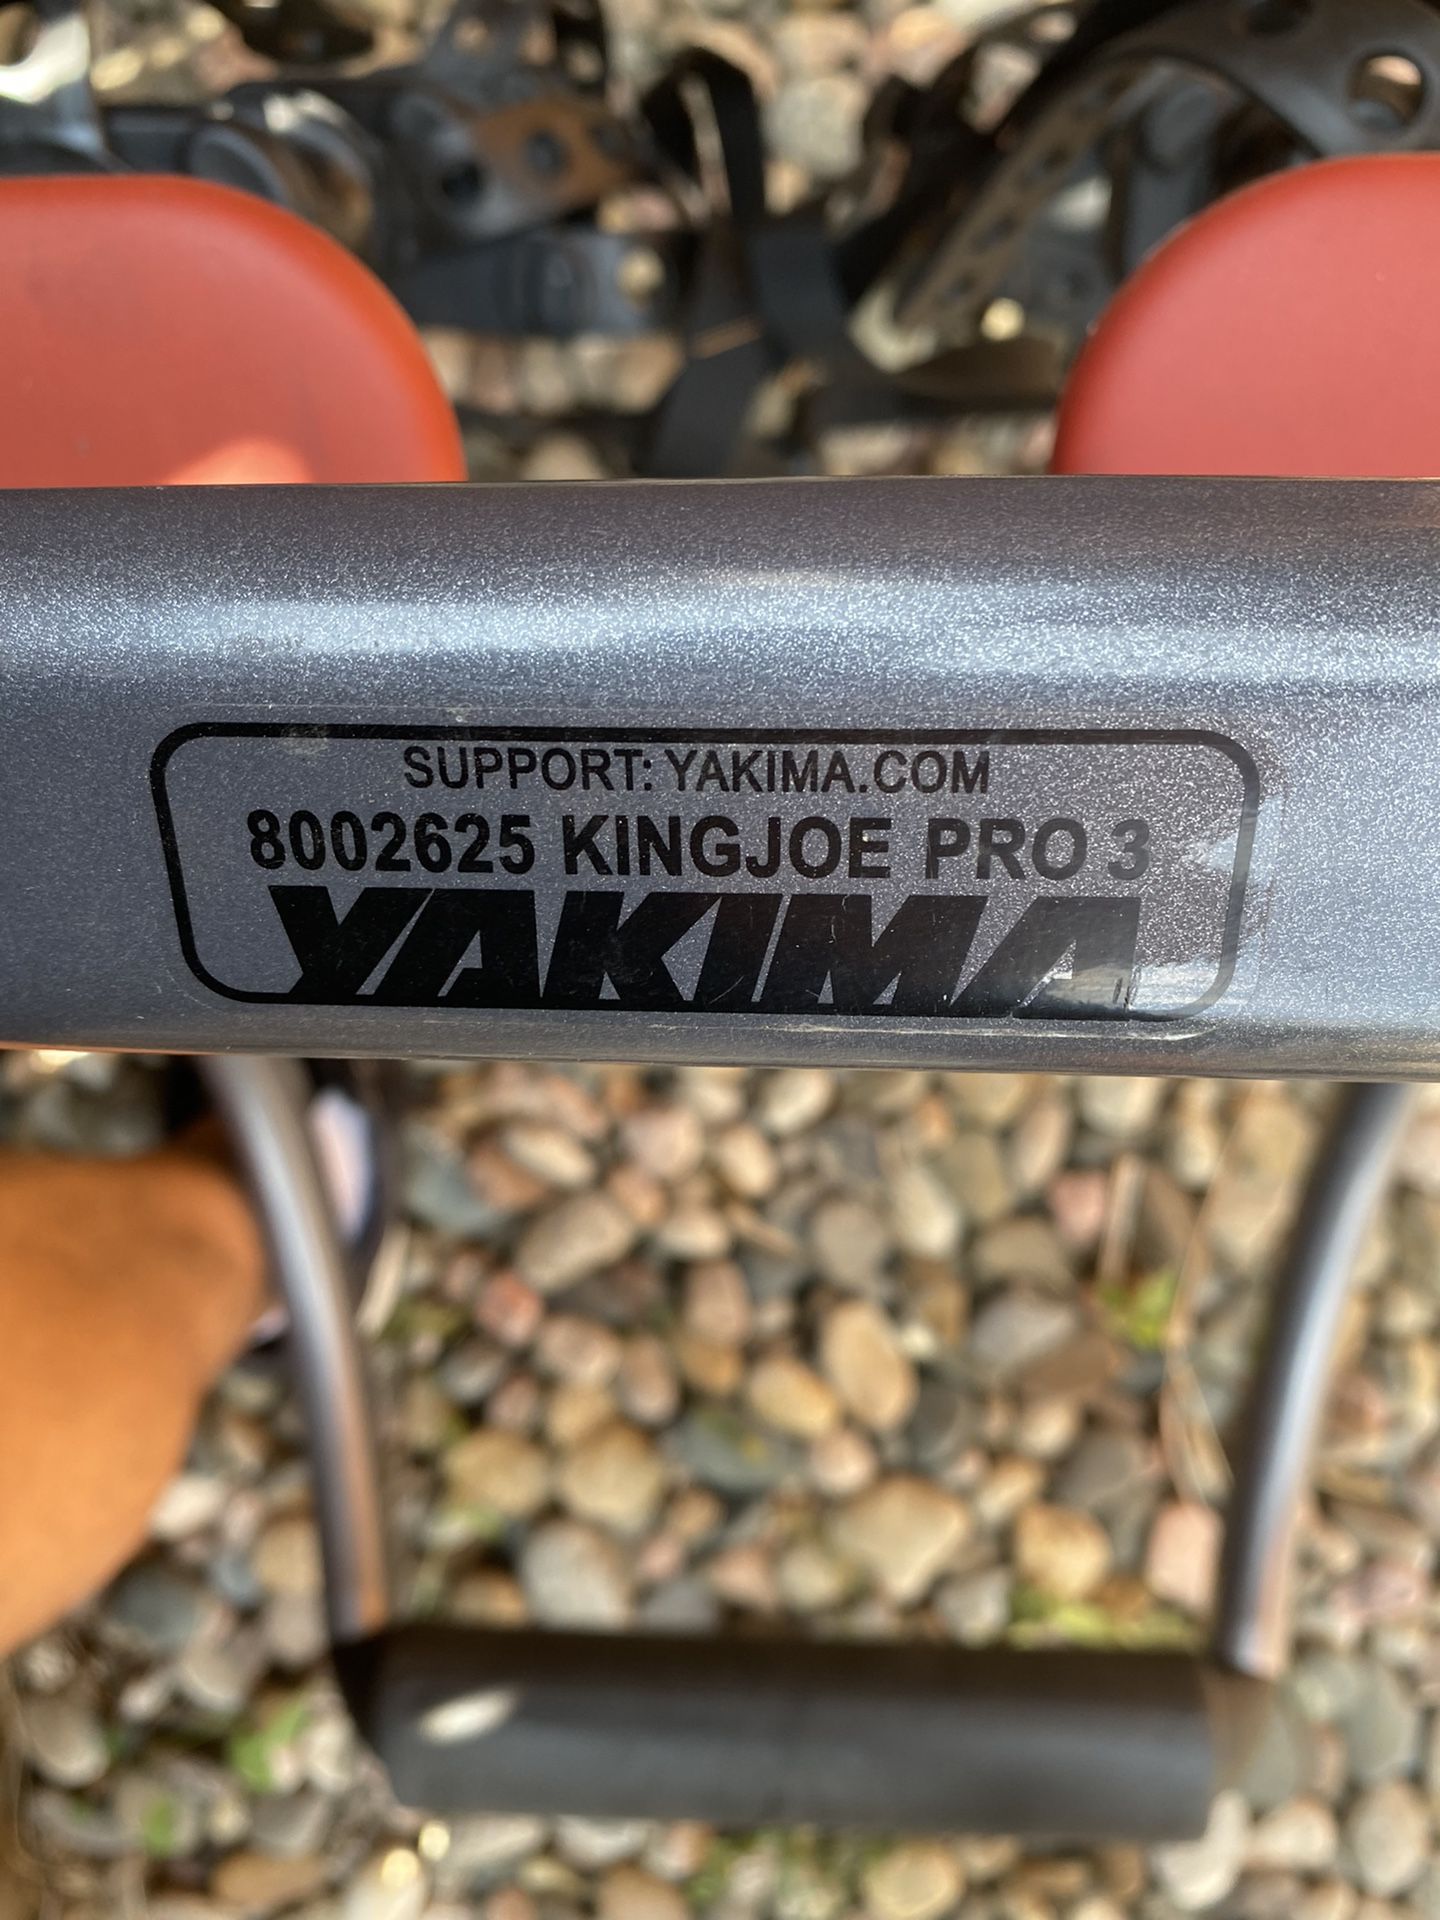 Yakima Bike rack